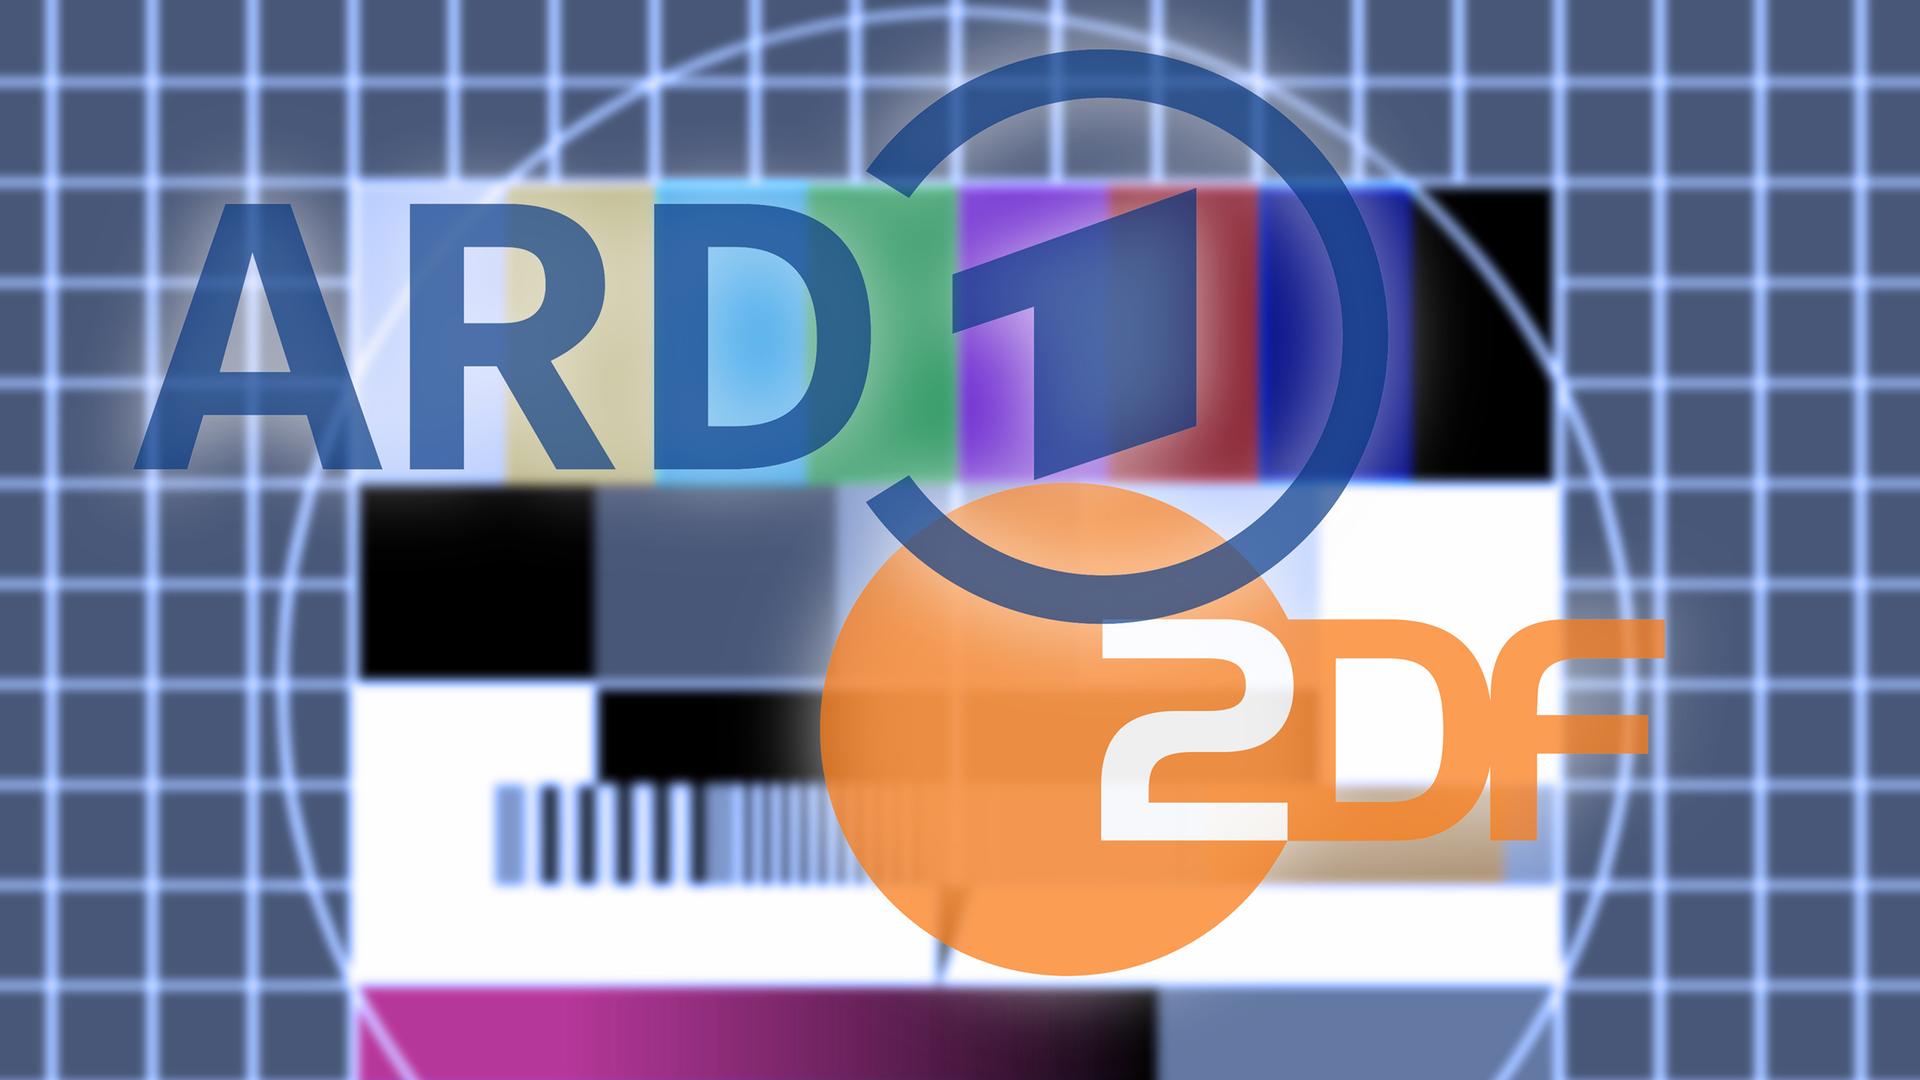 Logos der öffentlich rechtlichen Sendeanstalten ARD und ZDF auf einem Testbild.